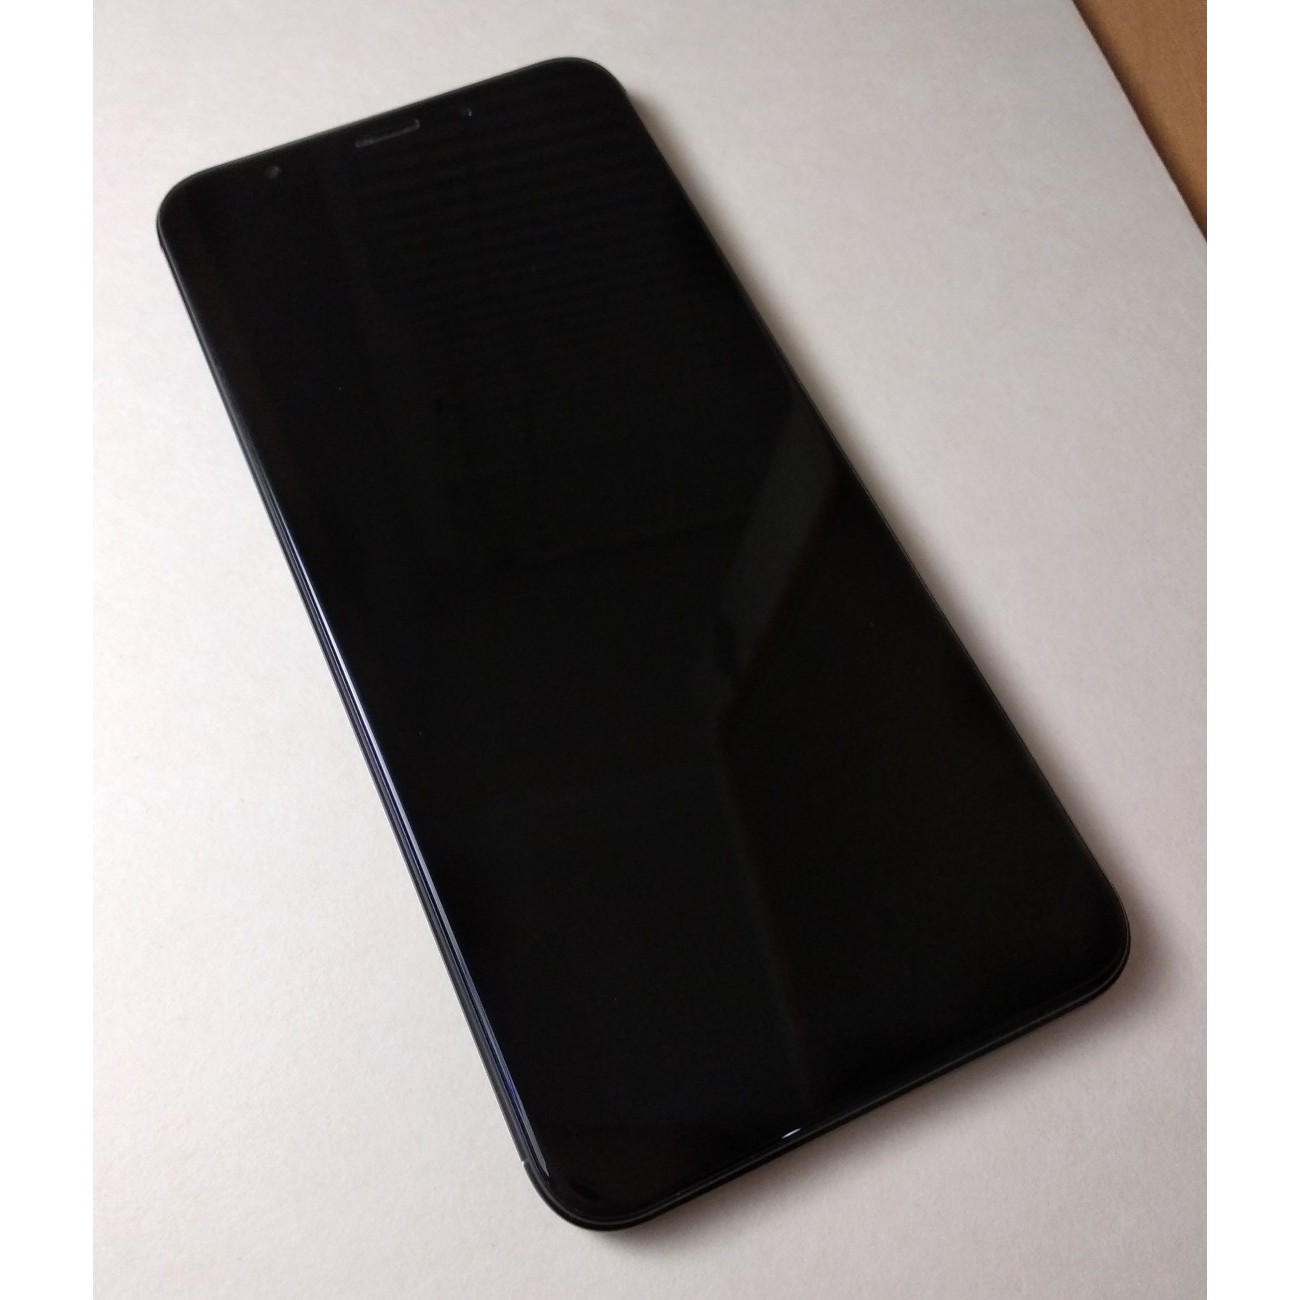 Мобильный телефон Xiaomi Redmi 5 Plus 32GB (черный)